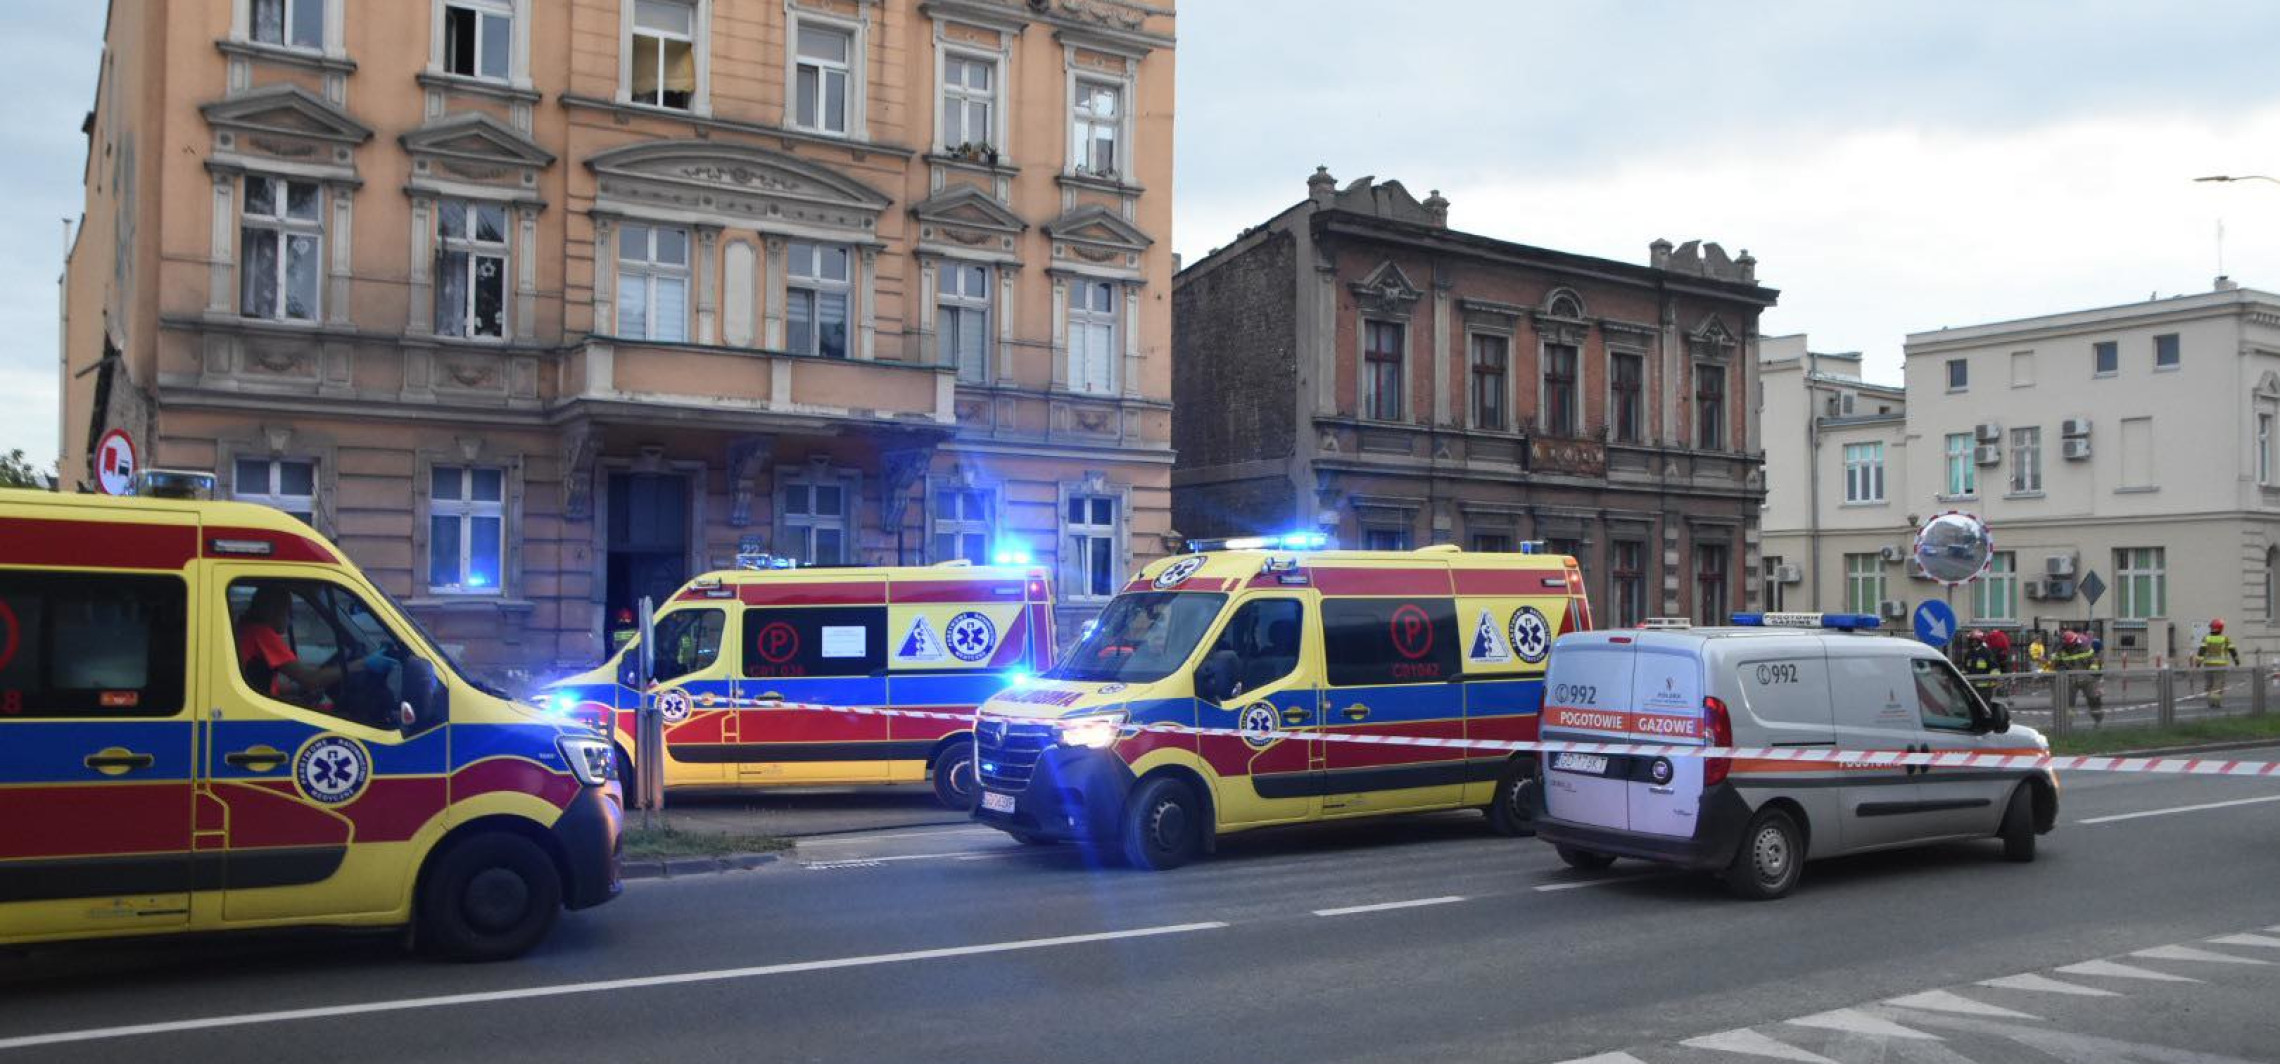 Inowrocław - Policjanci wynieśli rannego mężczyznę z kamienicy